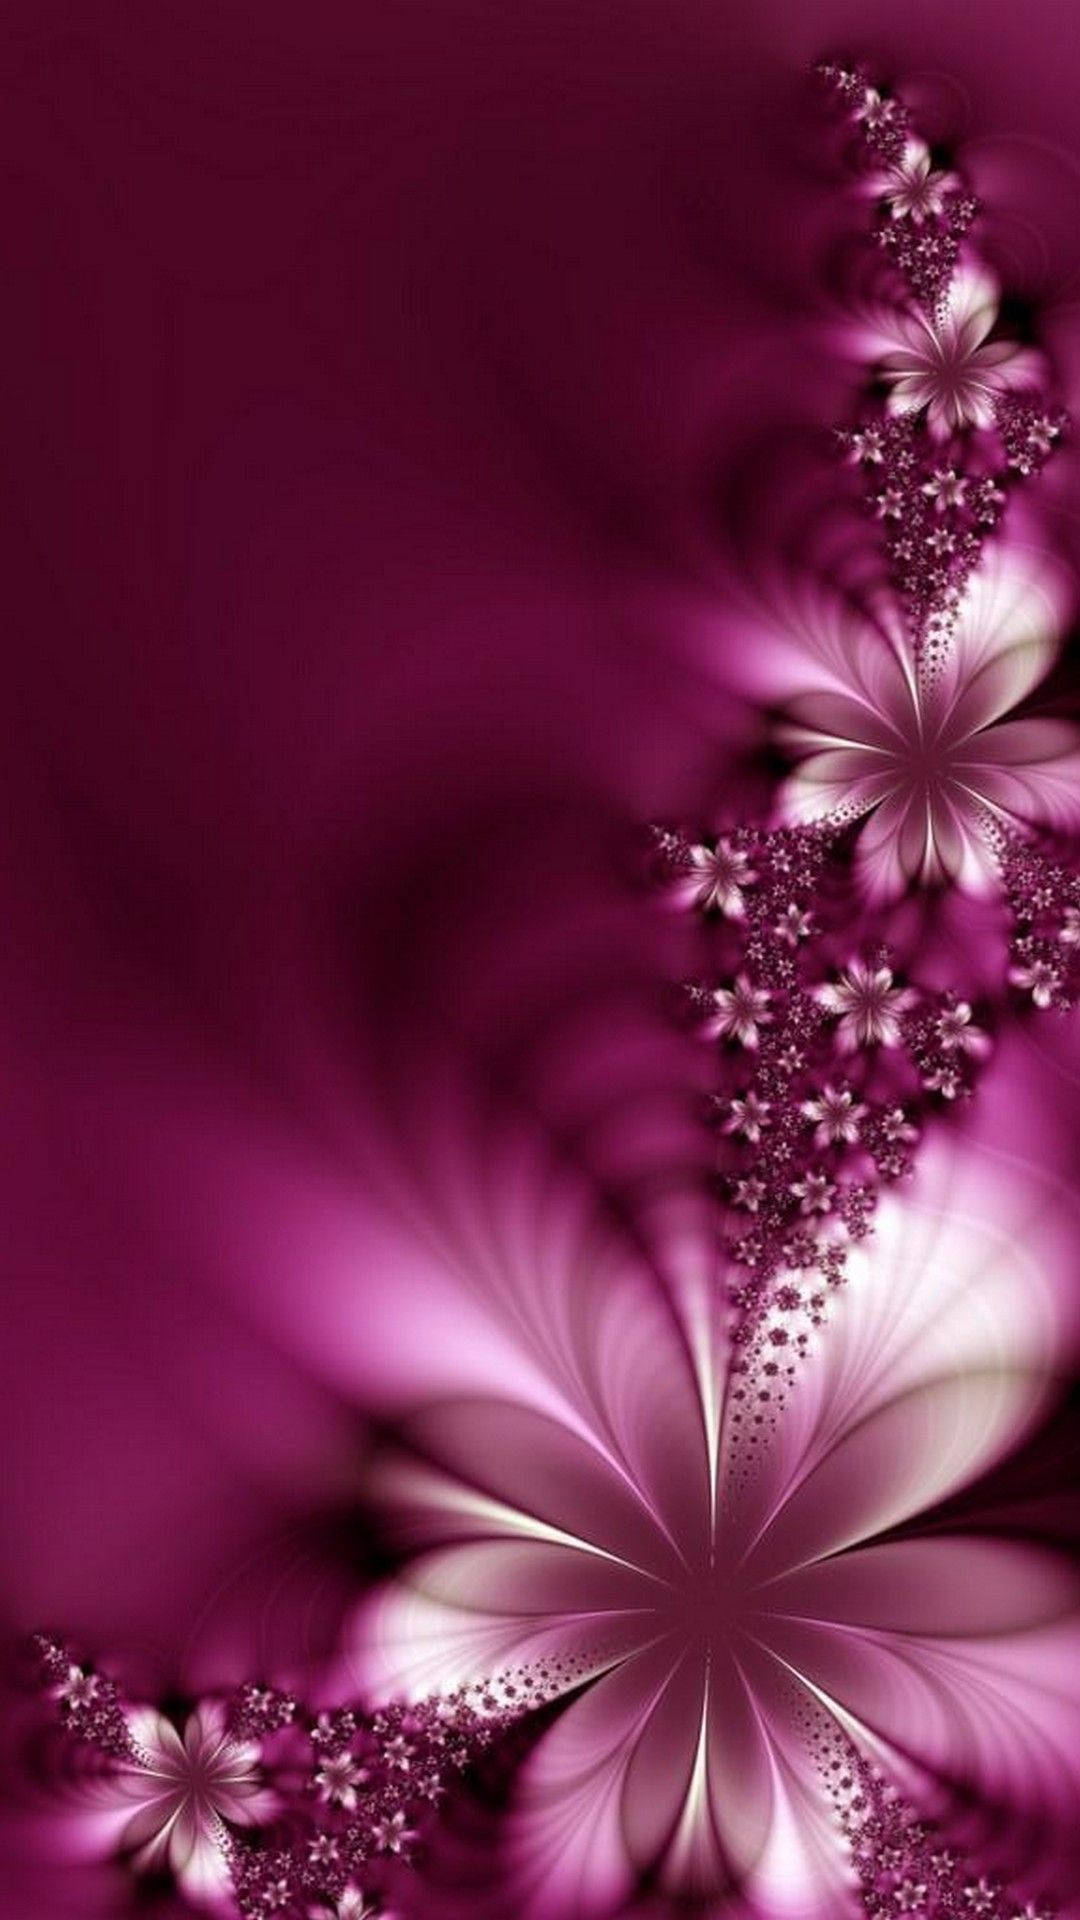 Adorable Pink Flower Digital Art Background